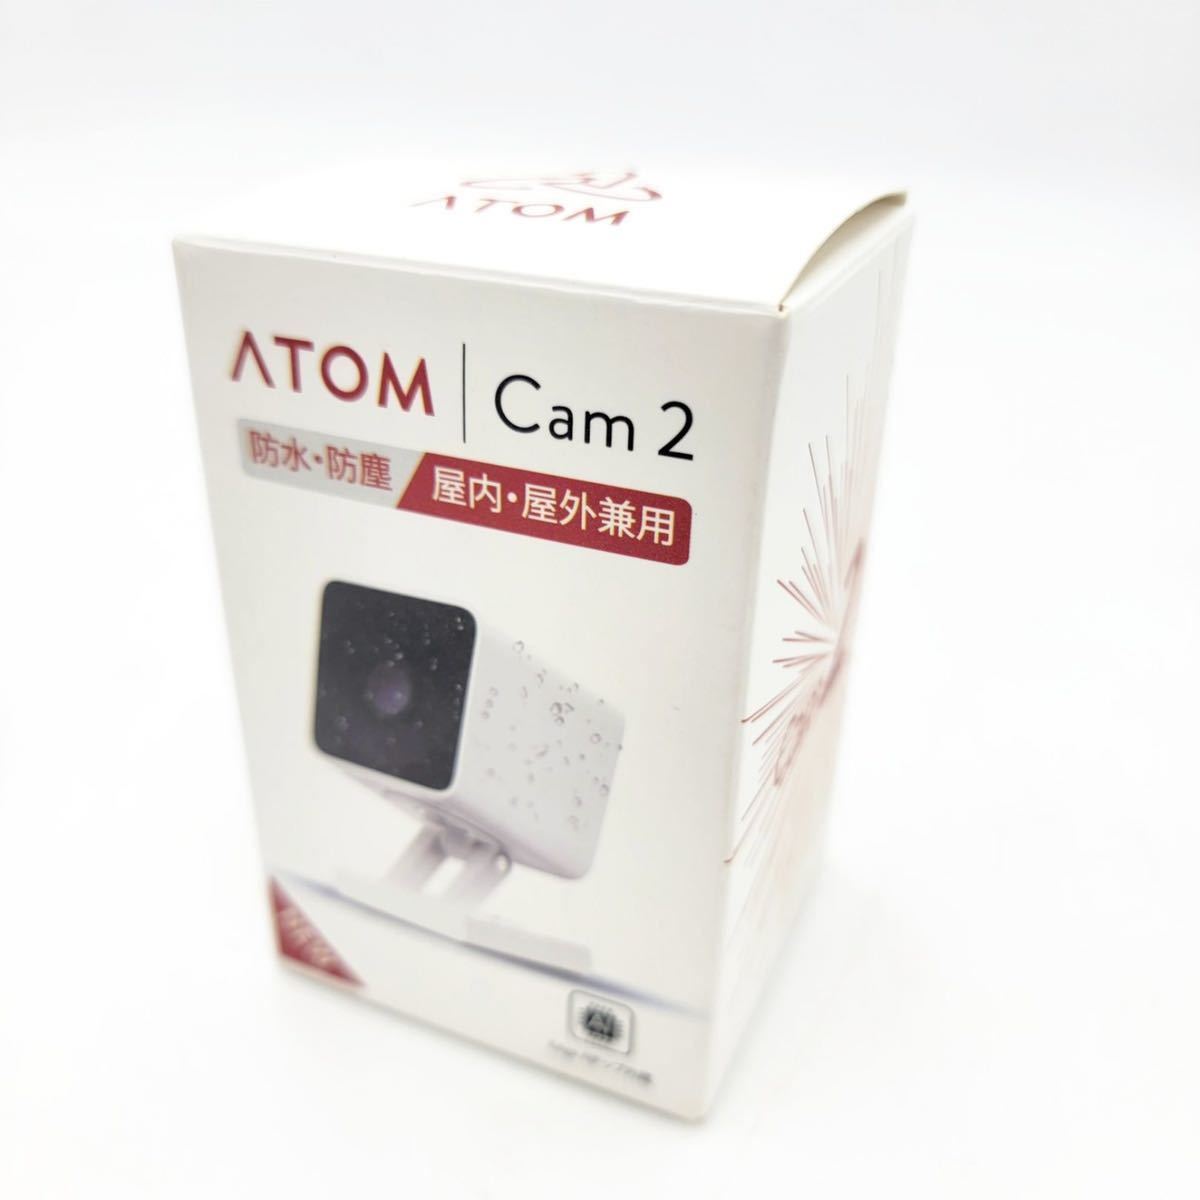  Atom Tec ATOM tech сеть камера ATOM Cam 2 водонепроницаемый пыленепроницаемый 1080p полный HD высокочувствительный CMOS сенсор установка предотвращение преступления мониторинг рабочее состояние подтверждено [NK8066]